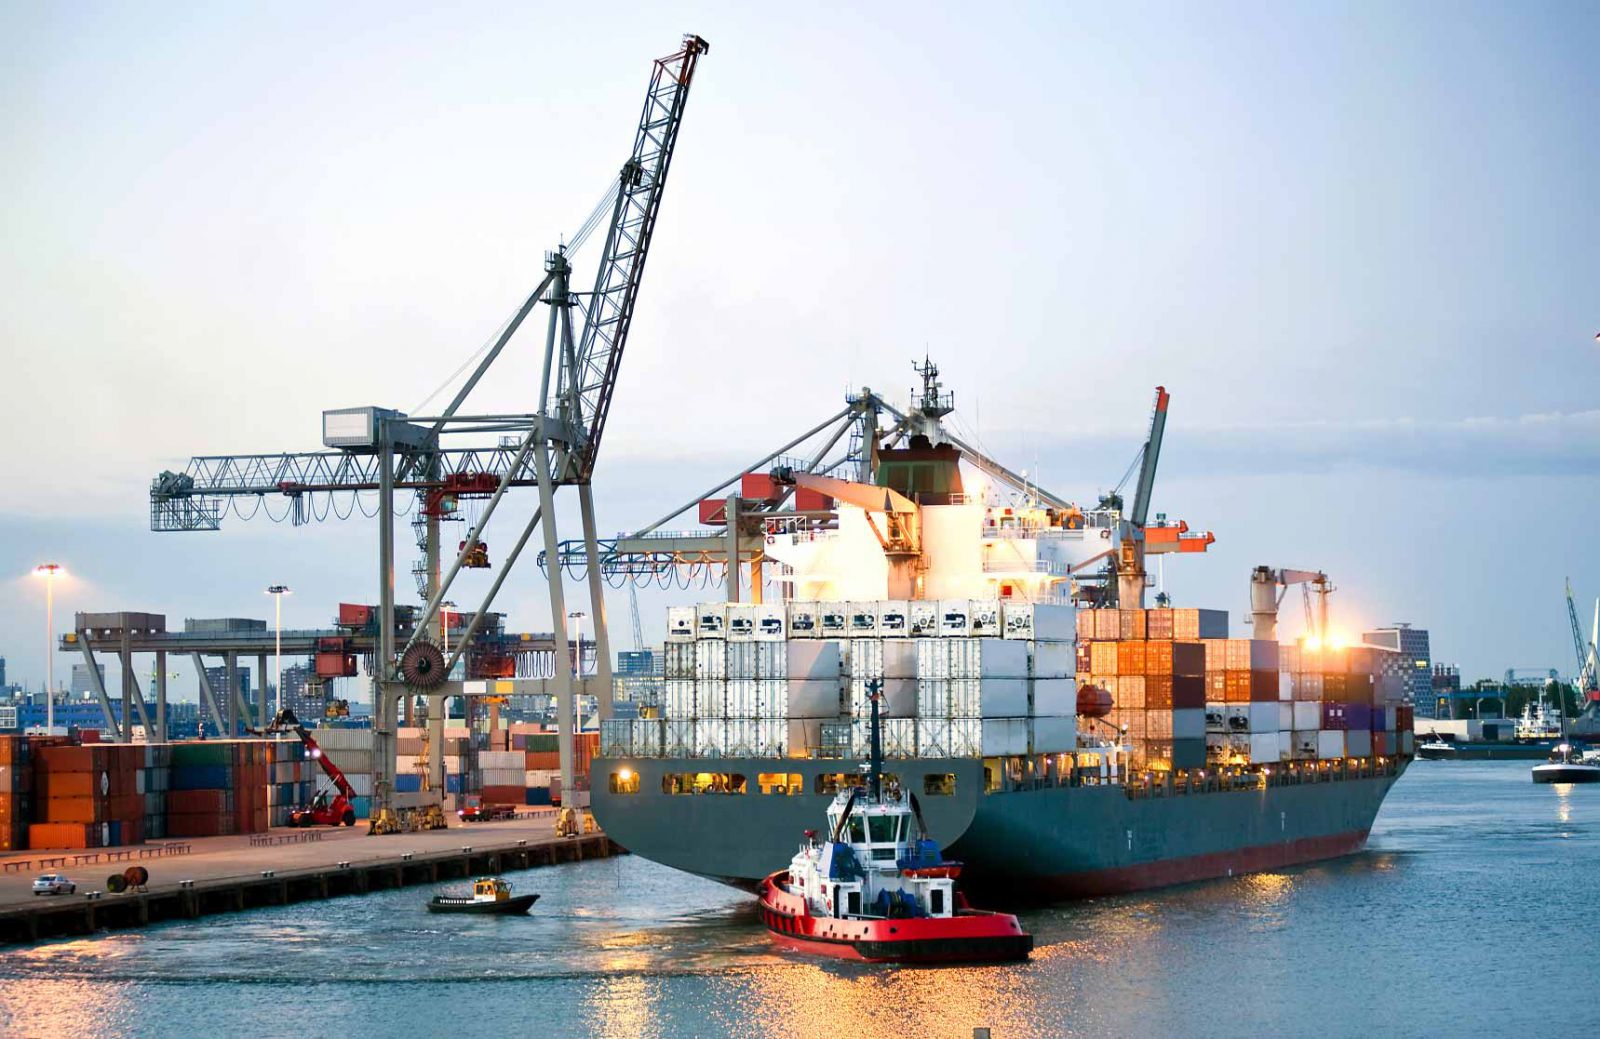 giá cước vận tải biển dự báo tăng cao trong năm nay, gây ảnh hưởng đến doanh nghiệp xuất khẩu gỗ.